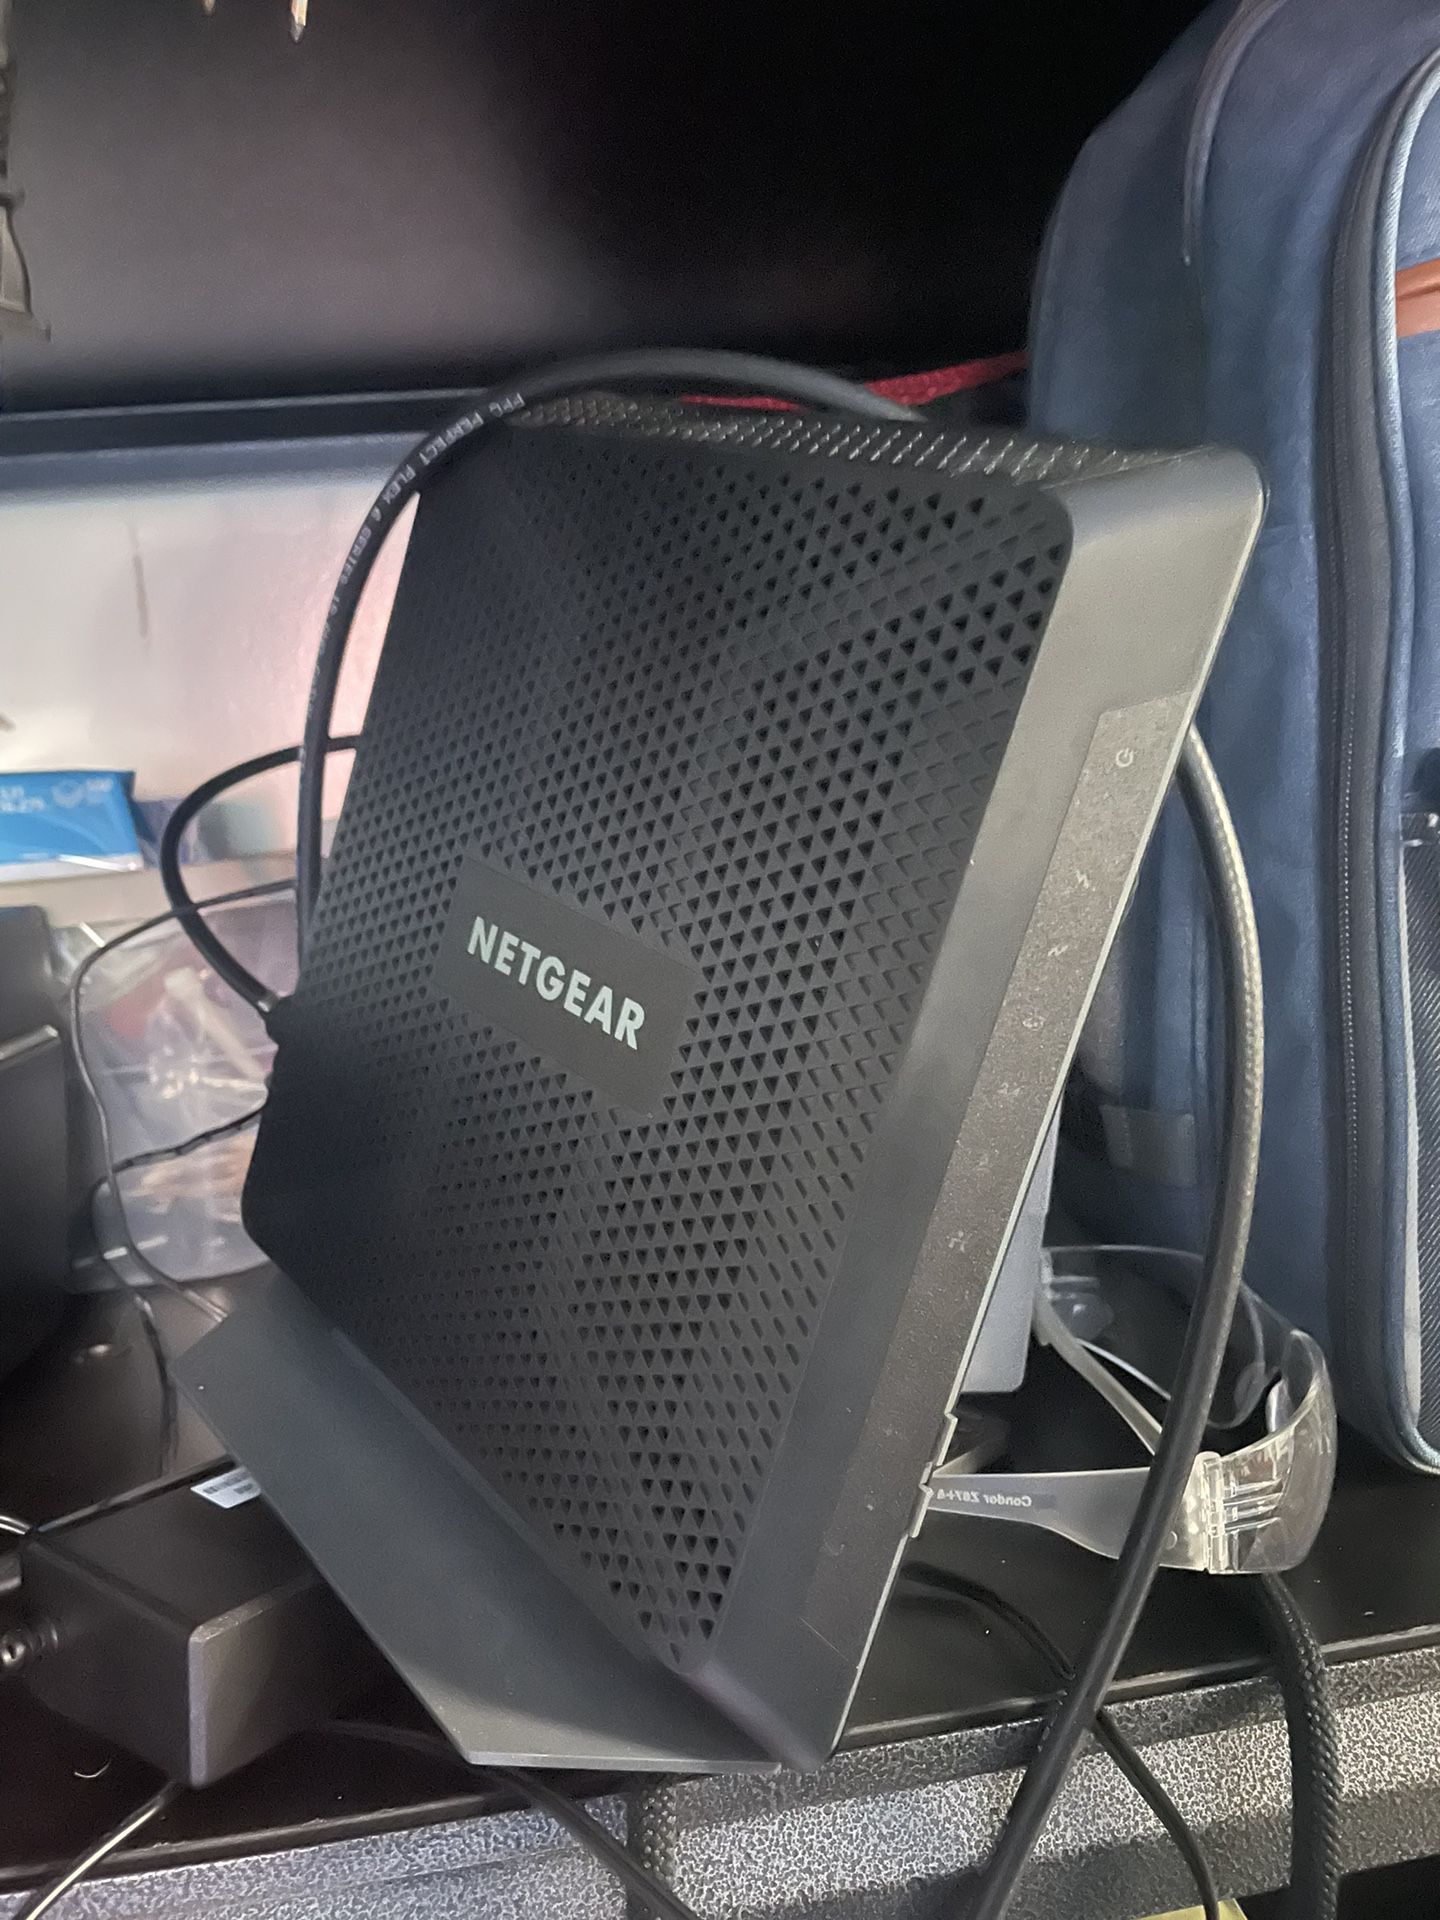 Netgear wifi router c7000v2